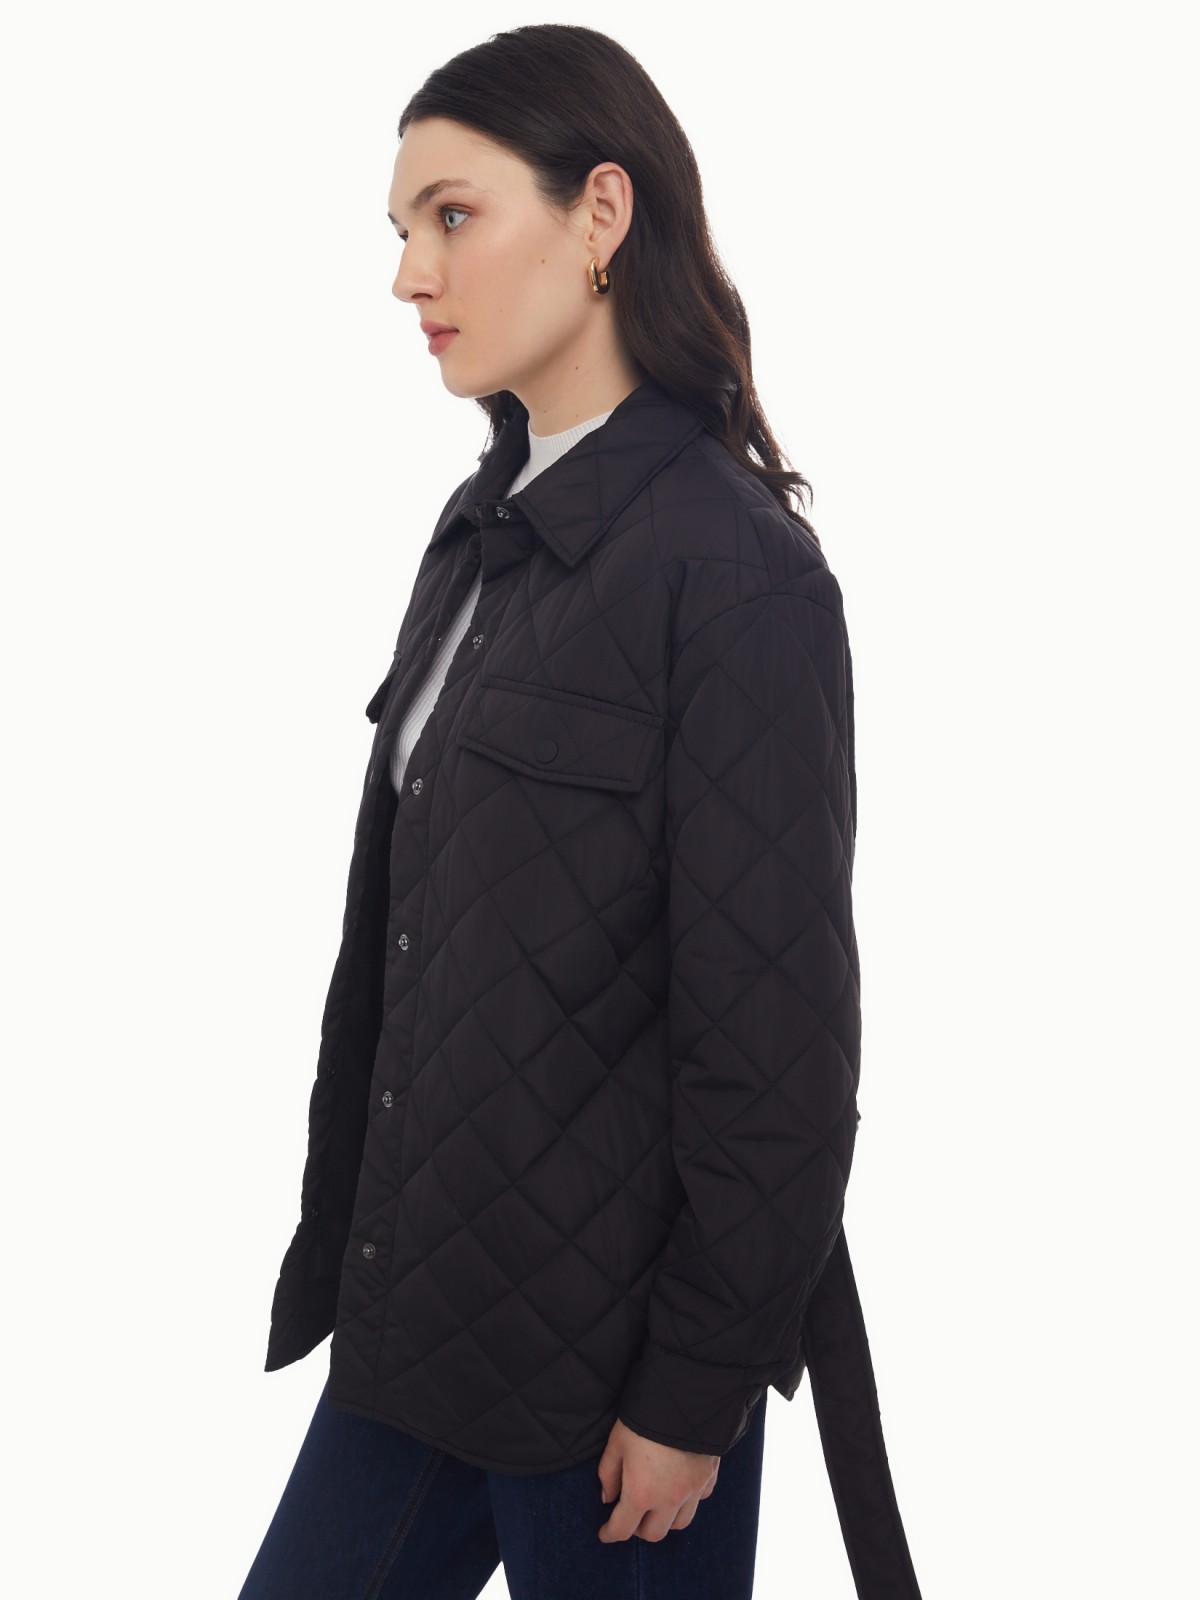 Утеплённая стёганая куртка-рубашка на синтепоне с поясом zolla 024135102134, цвет черный, размер XS - фото 4